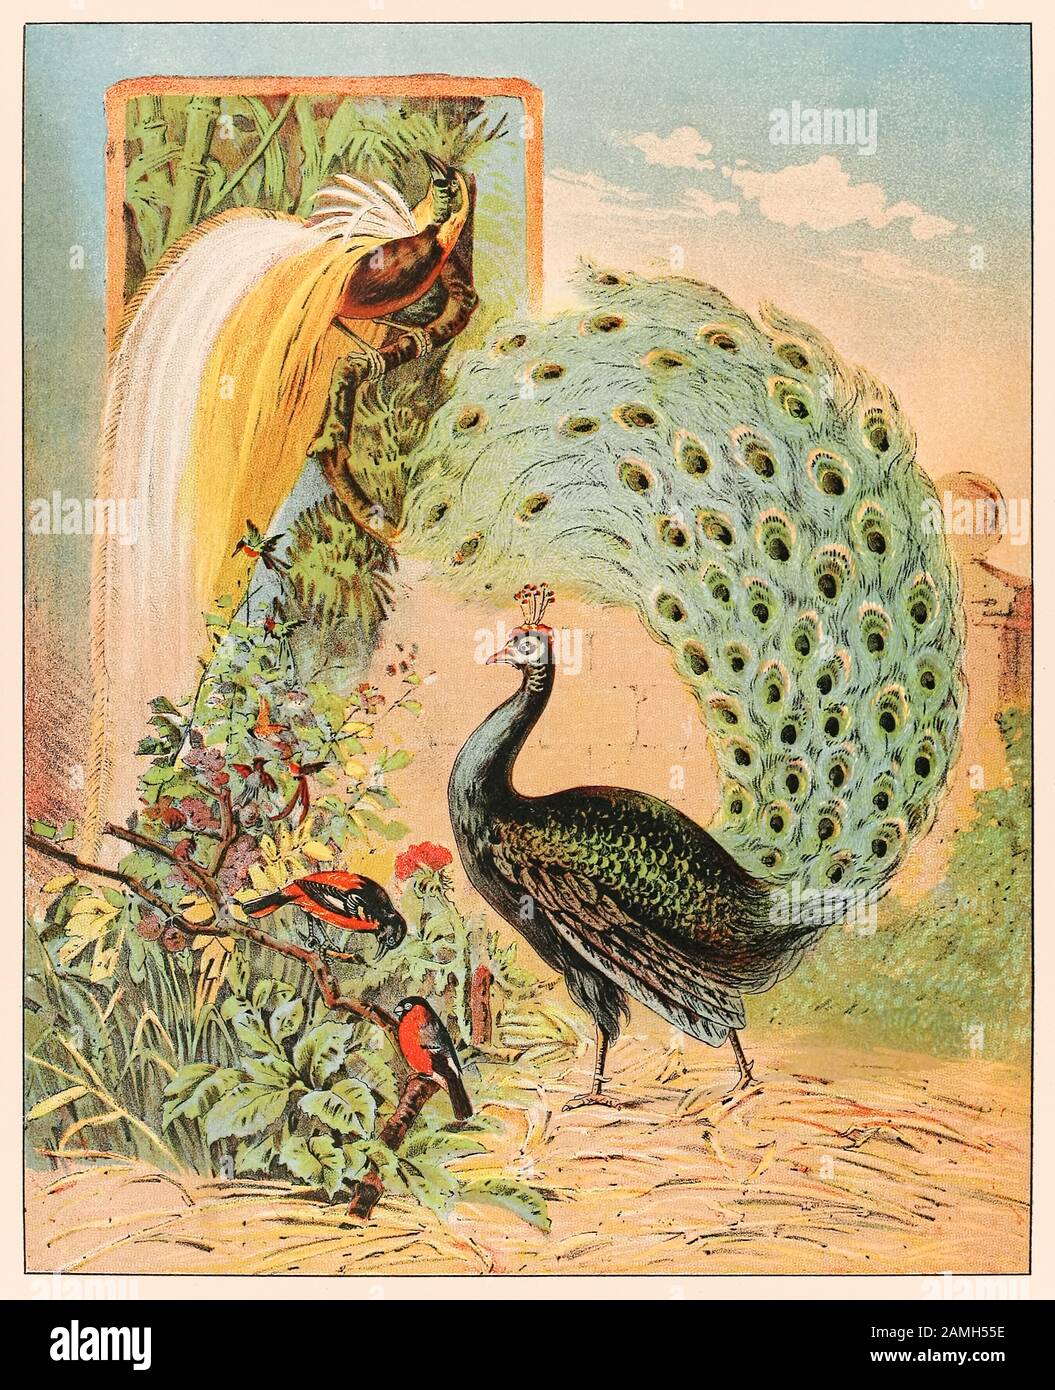 Ein Pfau unter anderen exotischen Vögeln in der Voliere des Barnum & Bailey Circus von P.T. Barnums Menagerie, erschienen im Jahr 1888, Illustration von Sarah J. Burke. Stockfoto